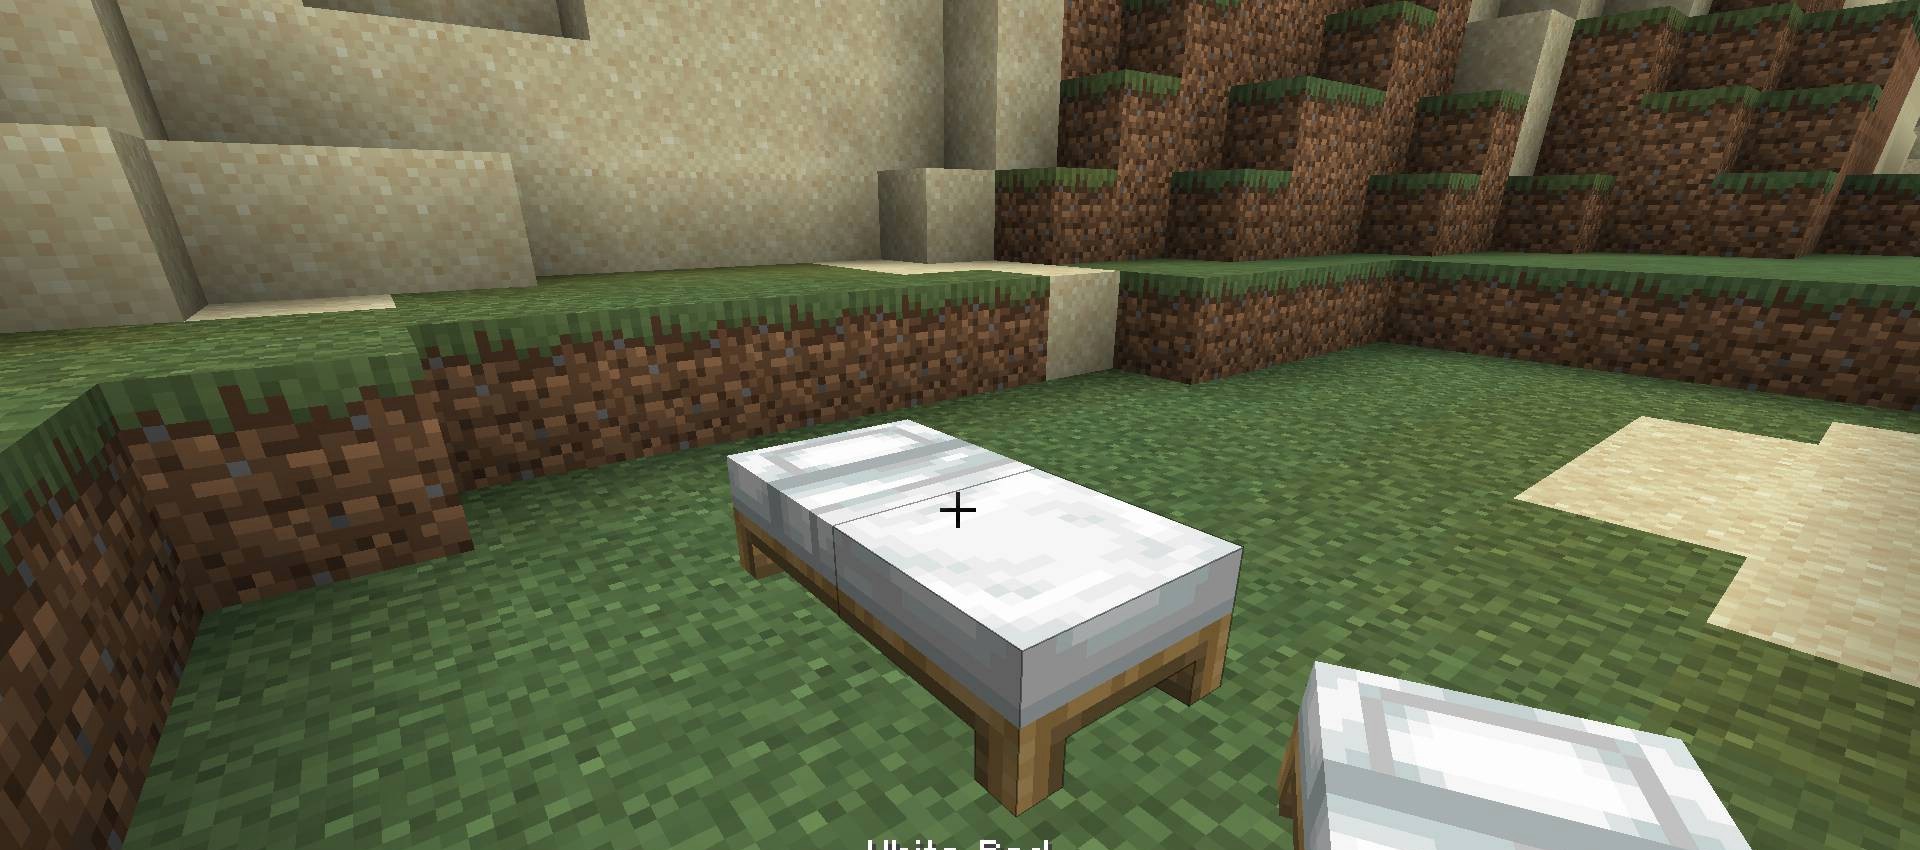 Bedspreads screenshot 2